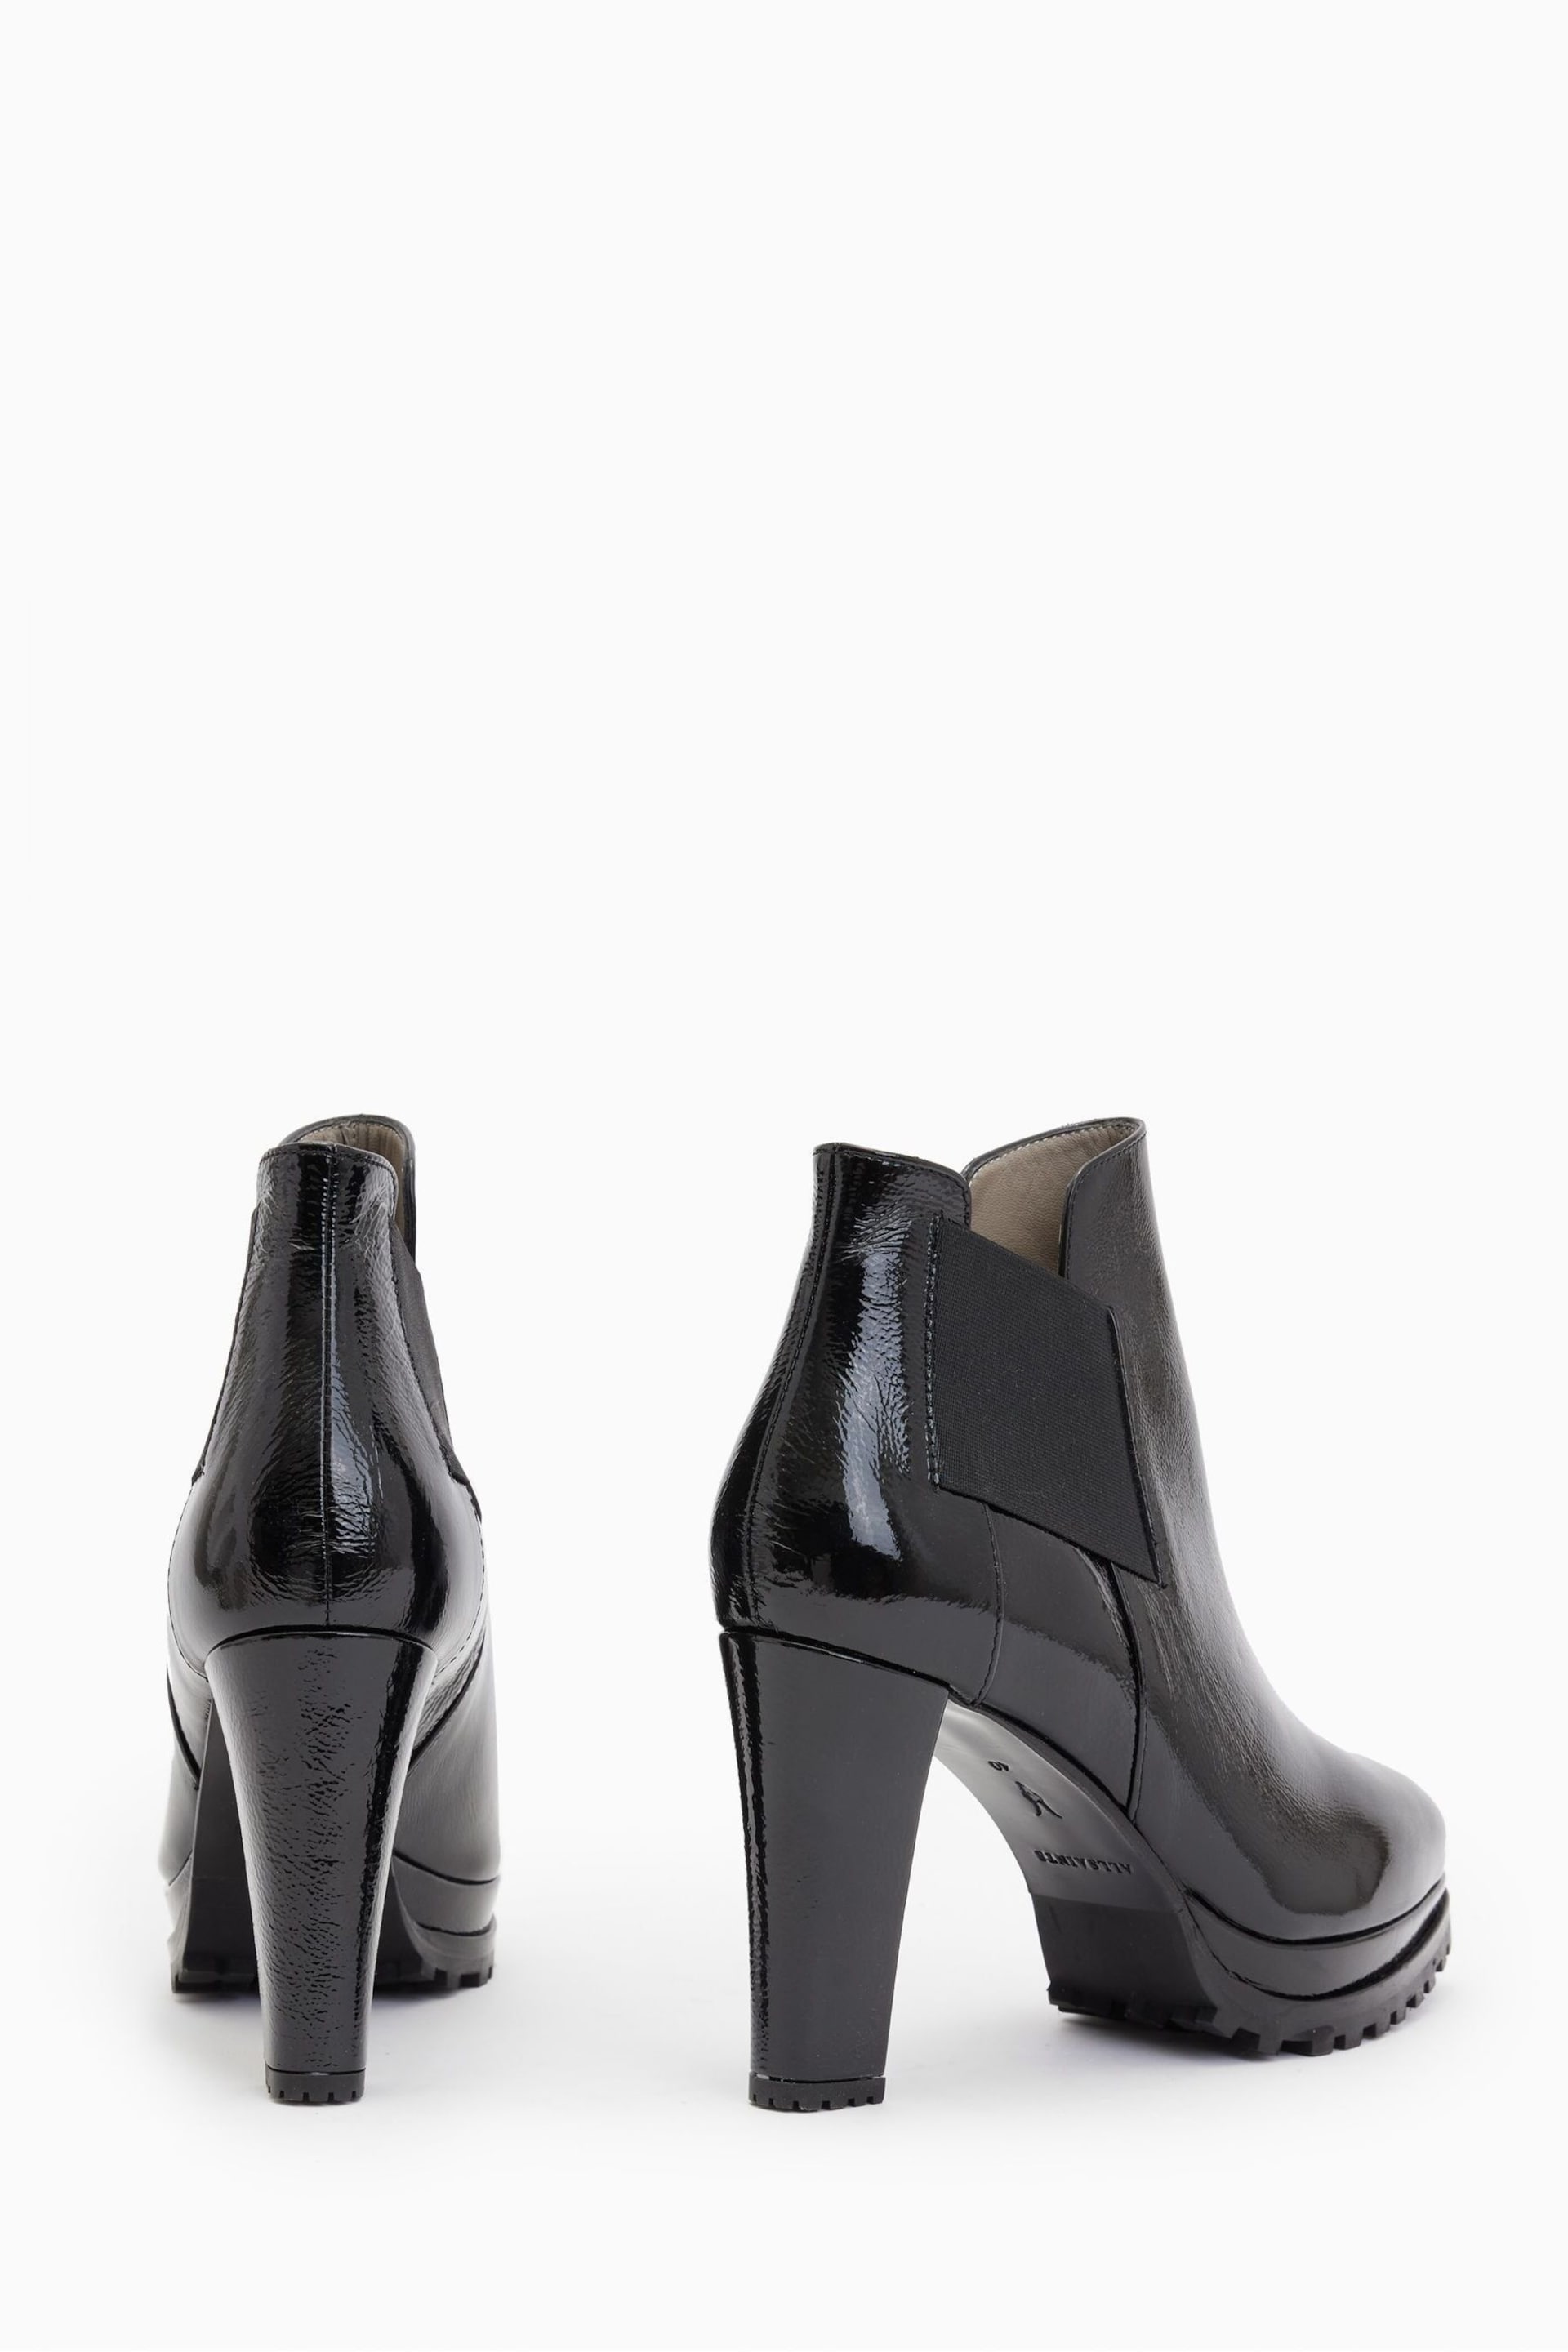 AllSaints Black Sarris Patent Boots - Image 5 of 5